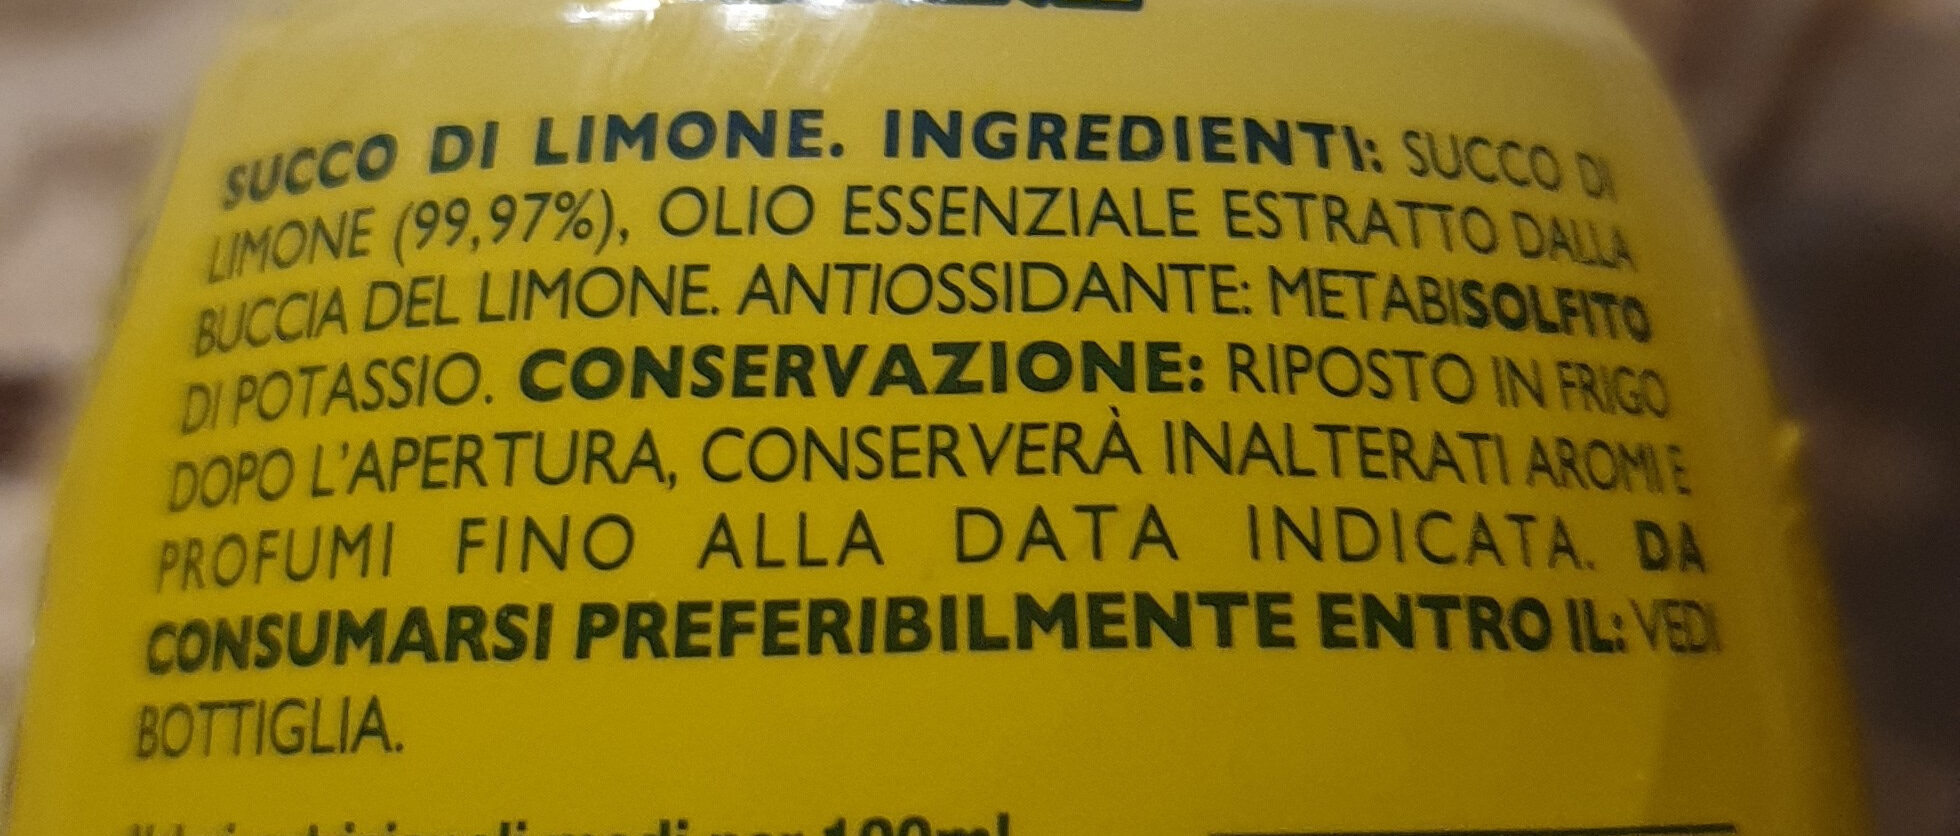 Succo di limone - Ingredienti